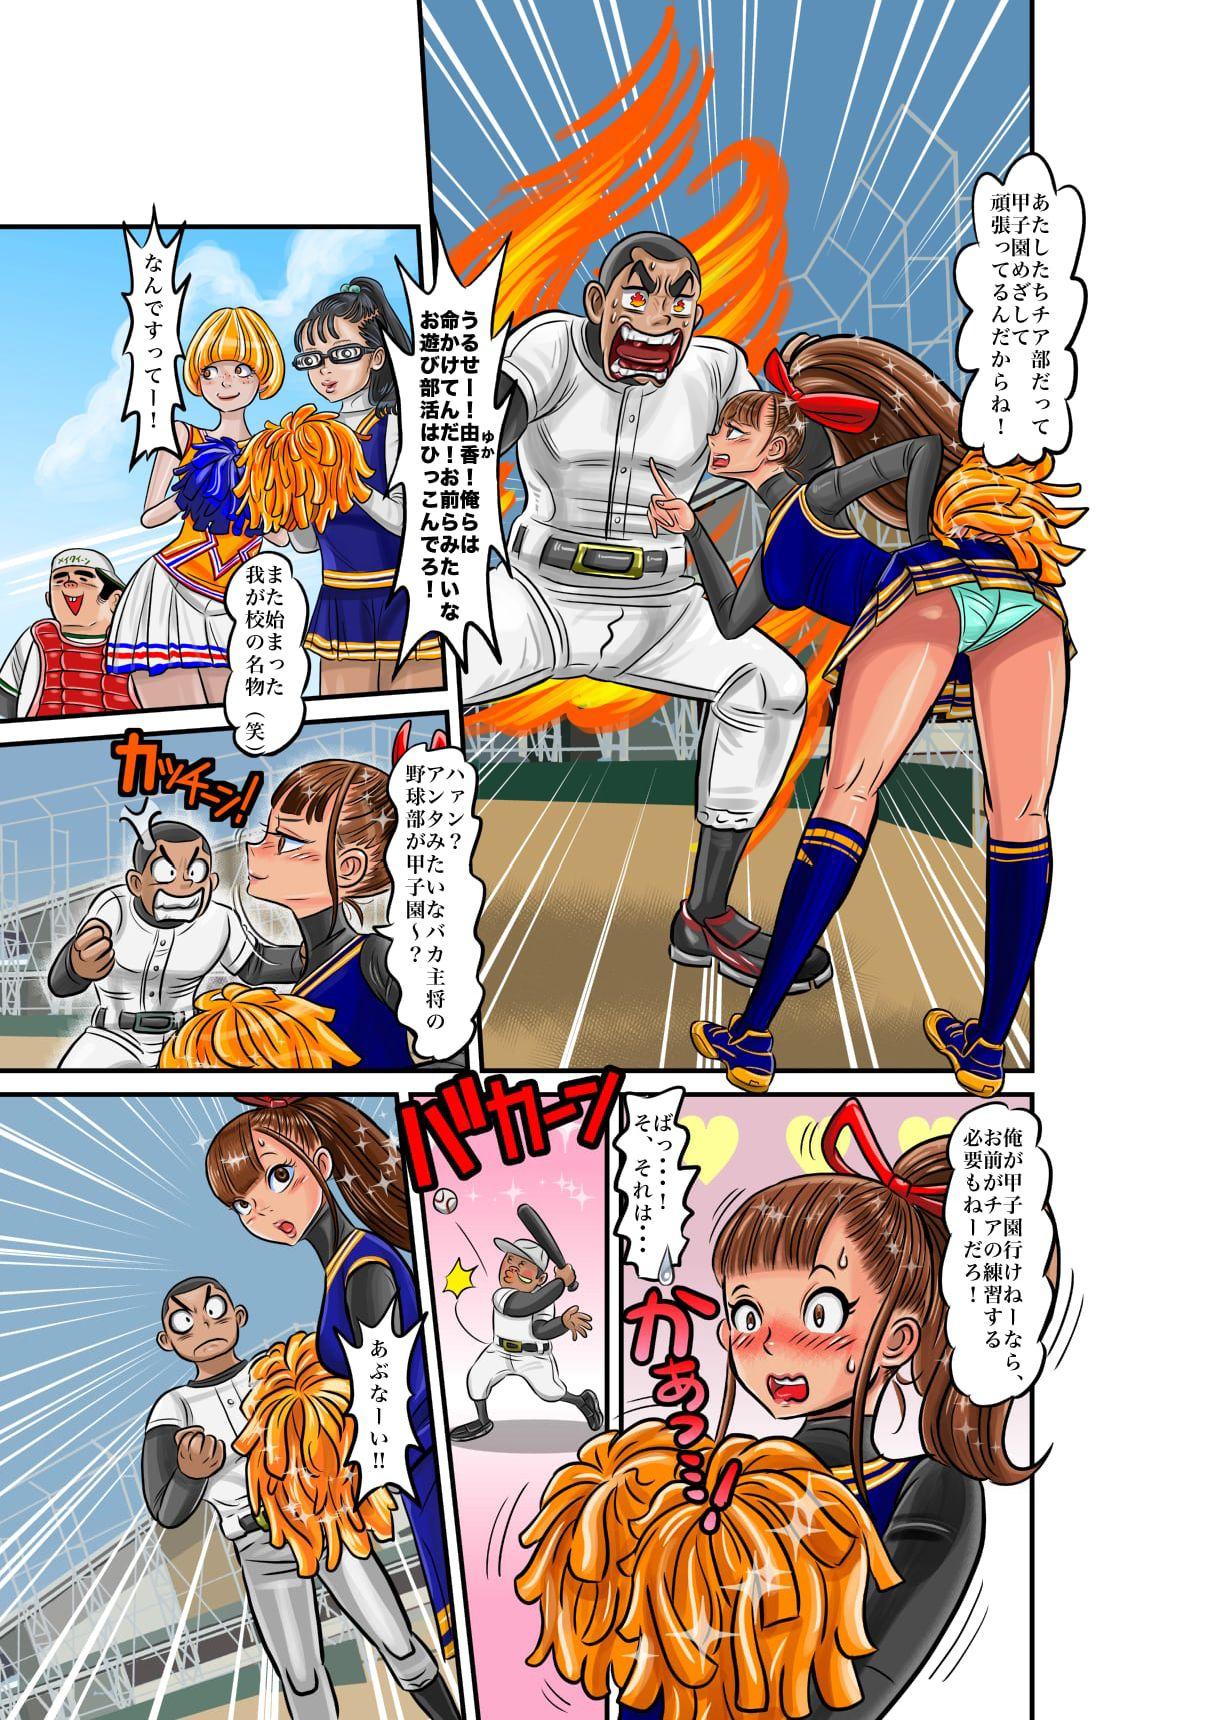 Nekketsu Yakyuu Buchou to Cheer Girl no Irekawari + Osoushiki de Hyoui Suru Manga 2